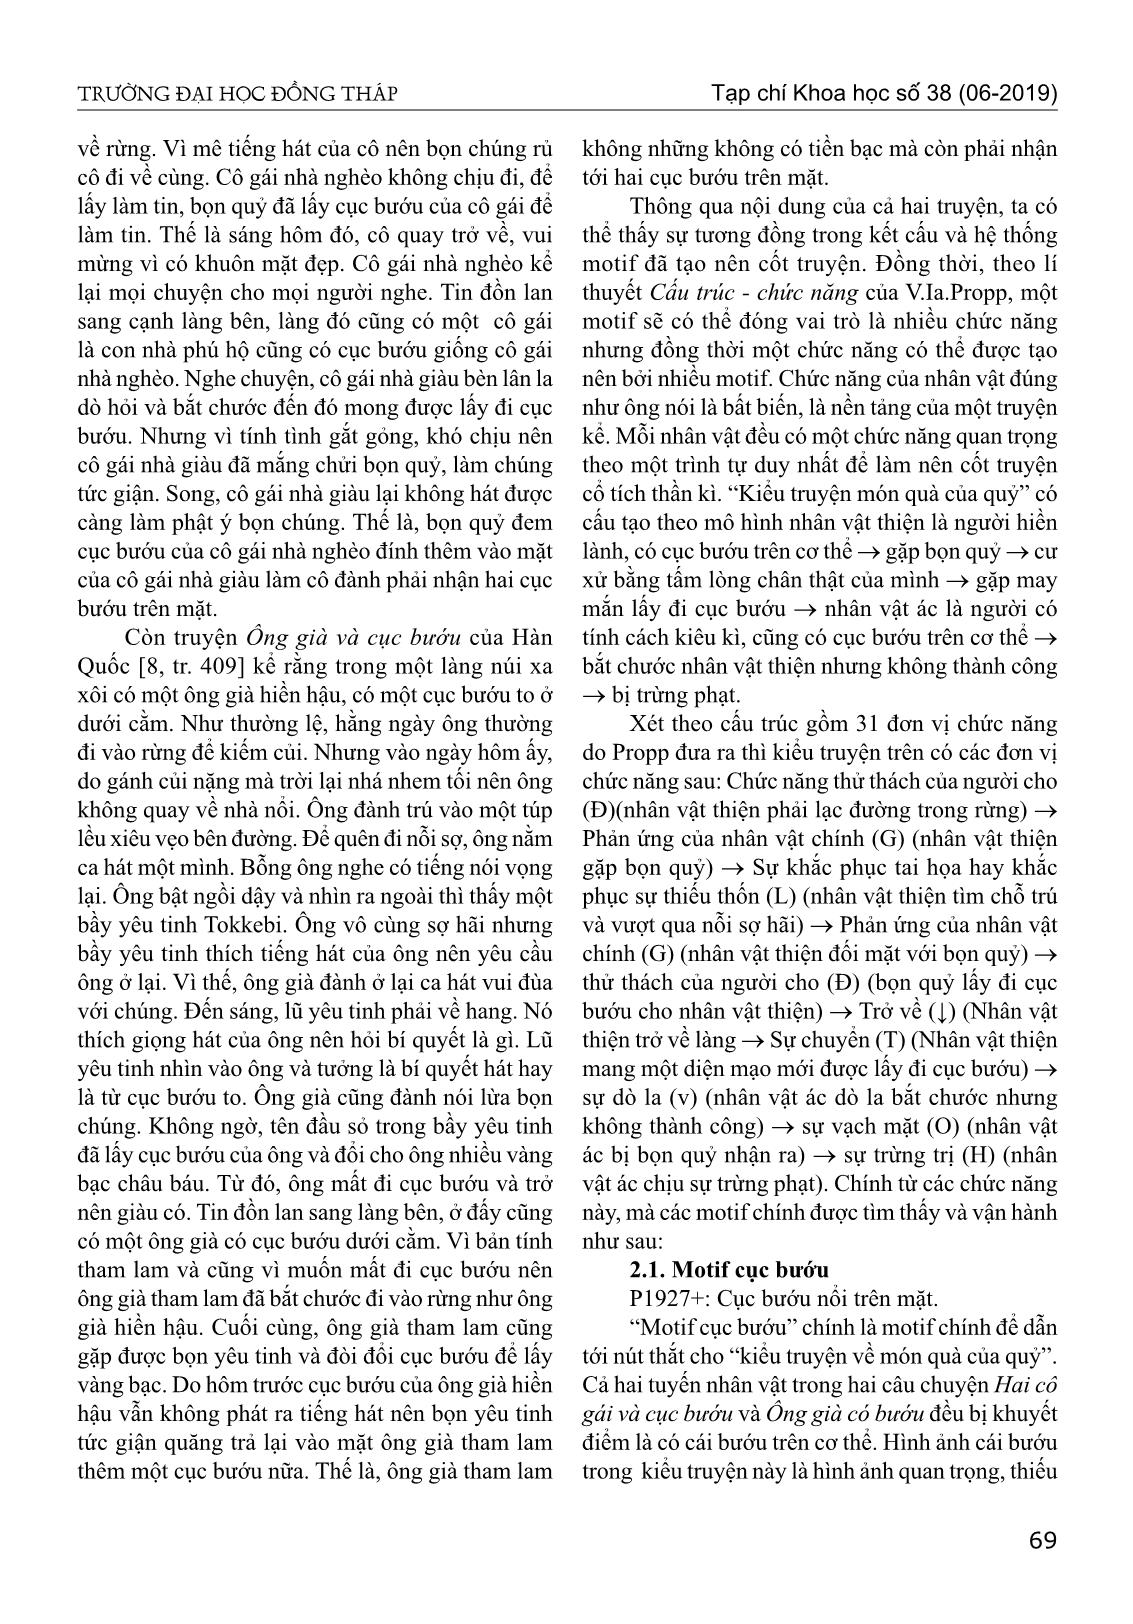 Motif trong truyện cổ tích hai cô gái và cục bướu của Việt Nam và ông già và cục bướu của Hàn Quốc từ góc nhìn so sánh trang 3